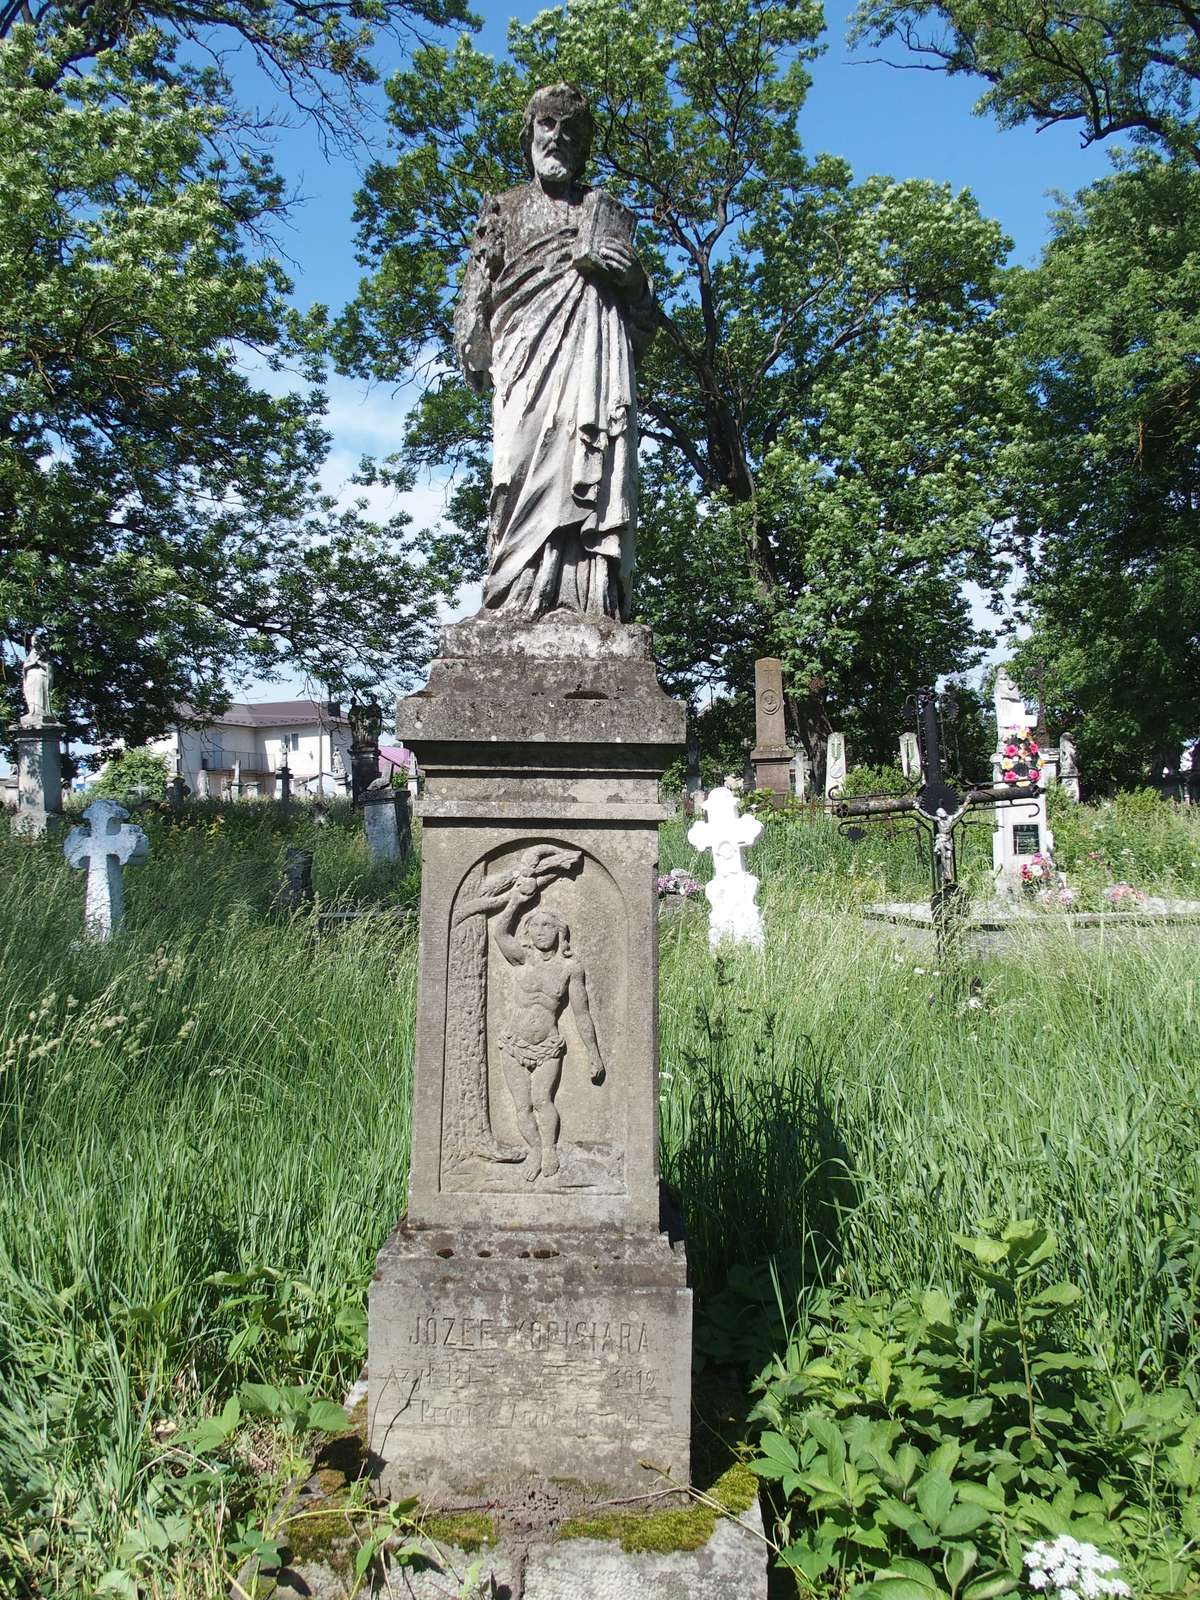 Nagrobek Józefa Kopisiary, cmentarz w Zbarażu, stan z 2018 r.